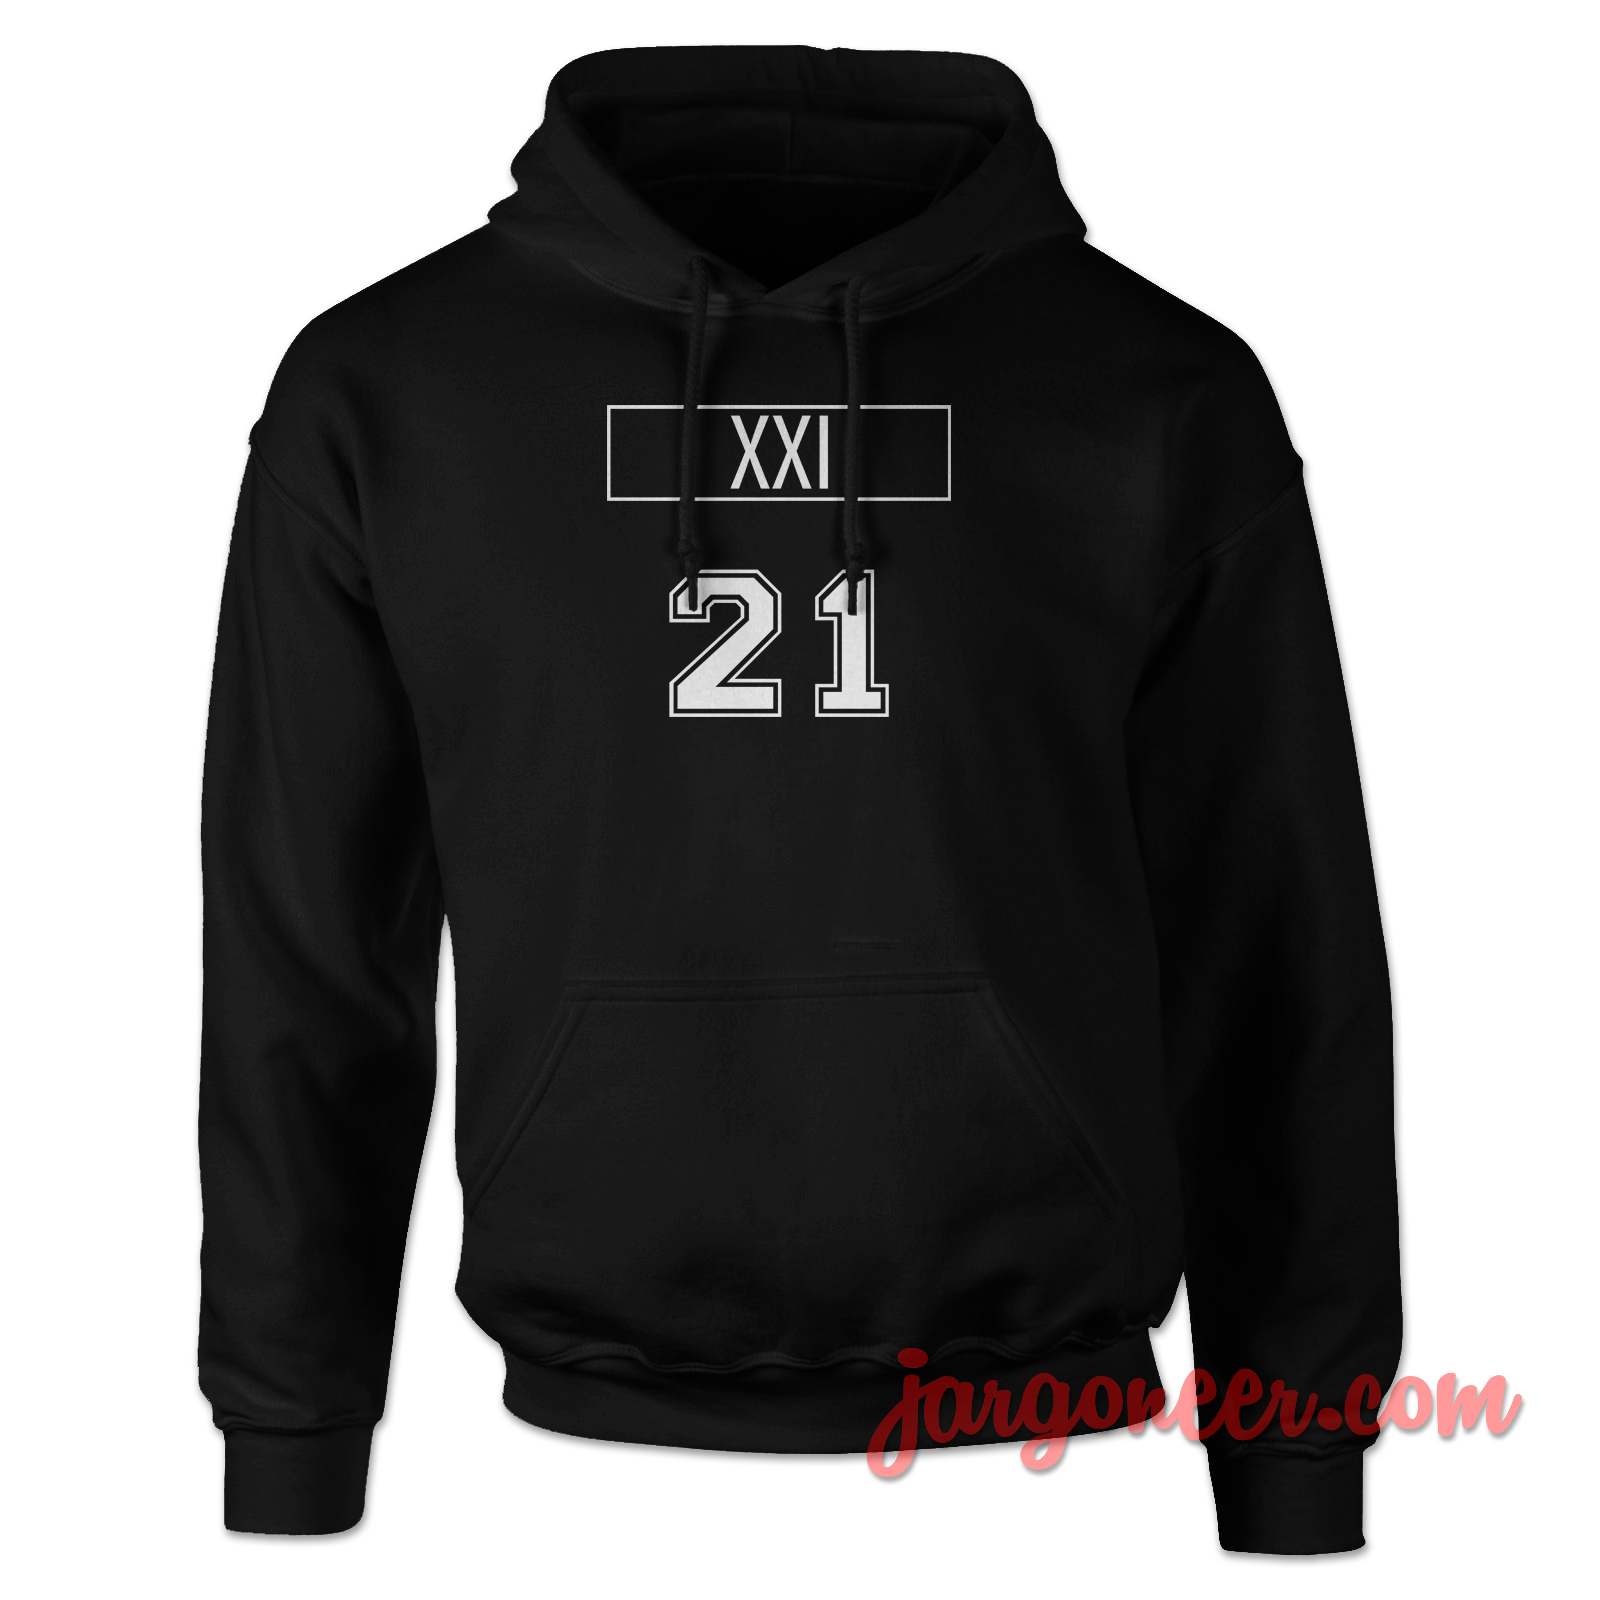 XXI 21 2 - Shop Unique Graphic Cool Shirt Designs